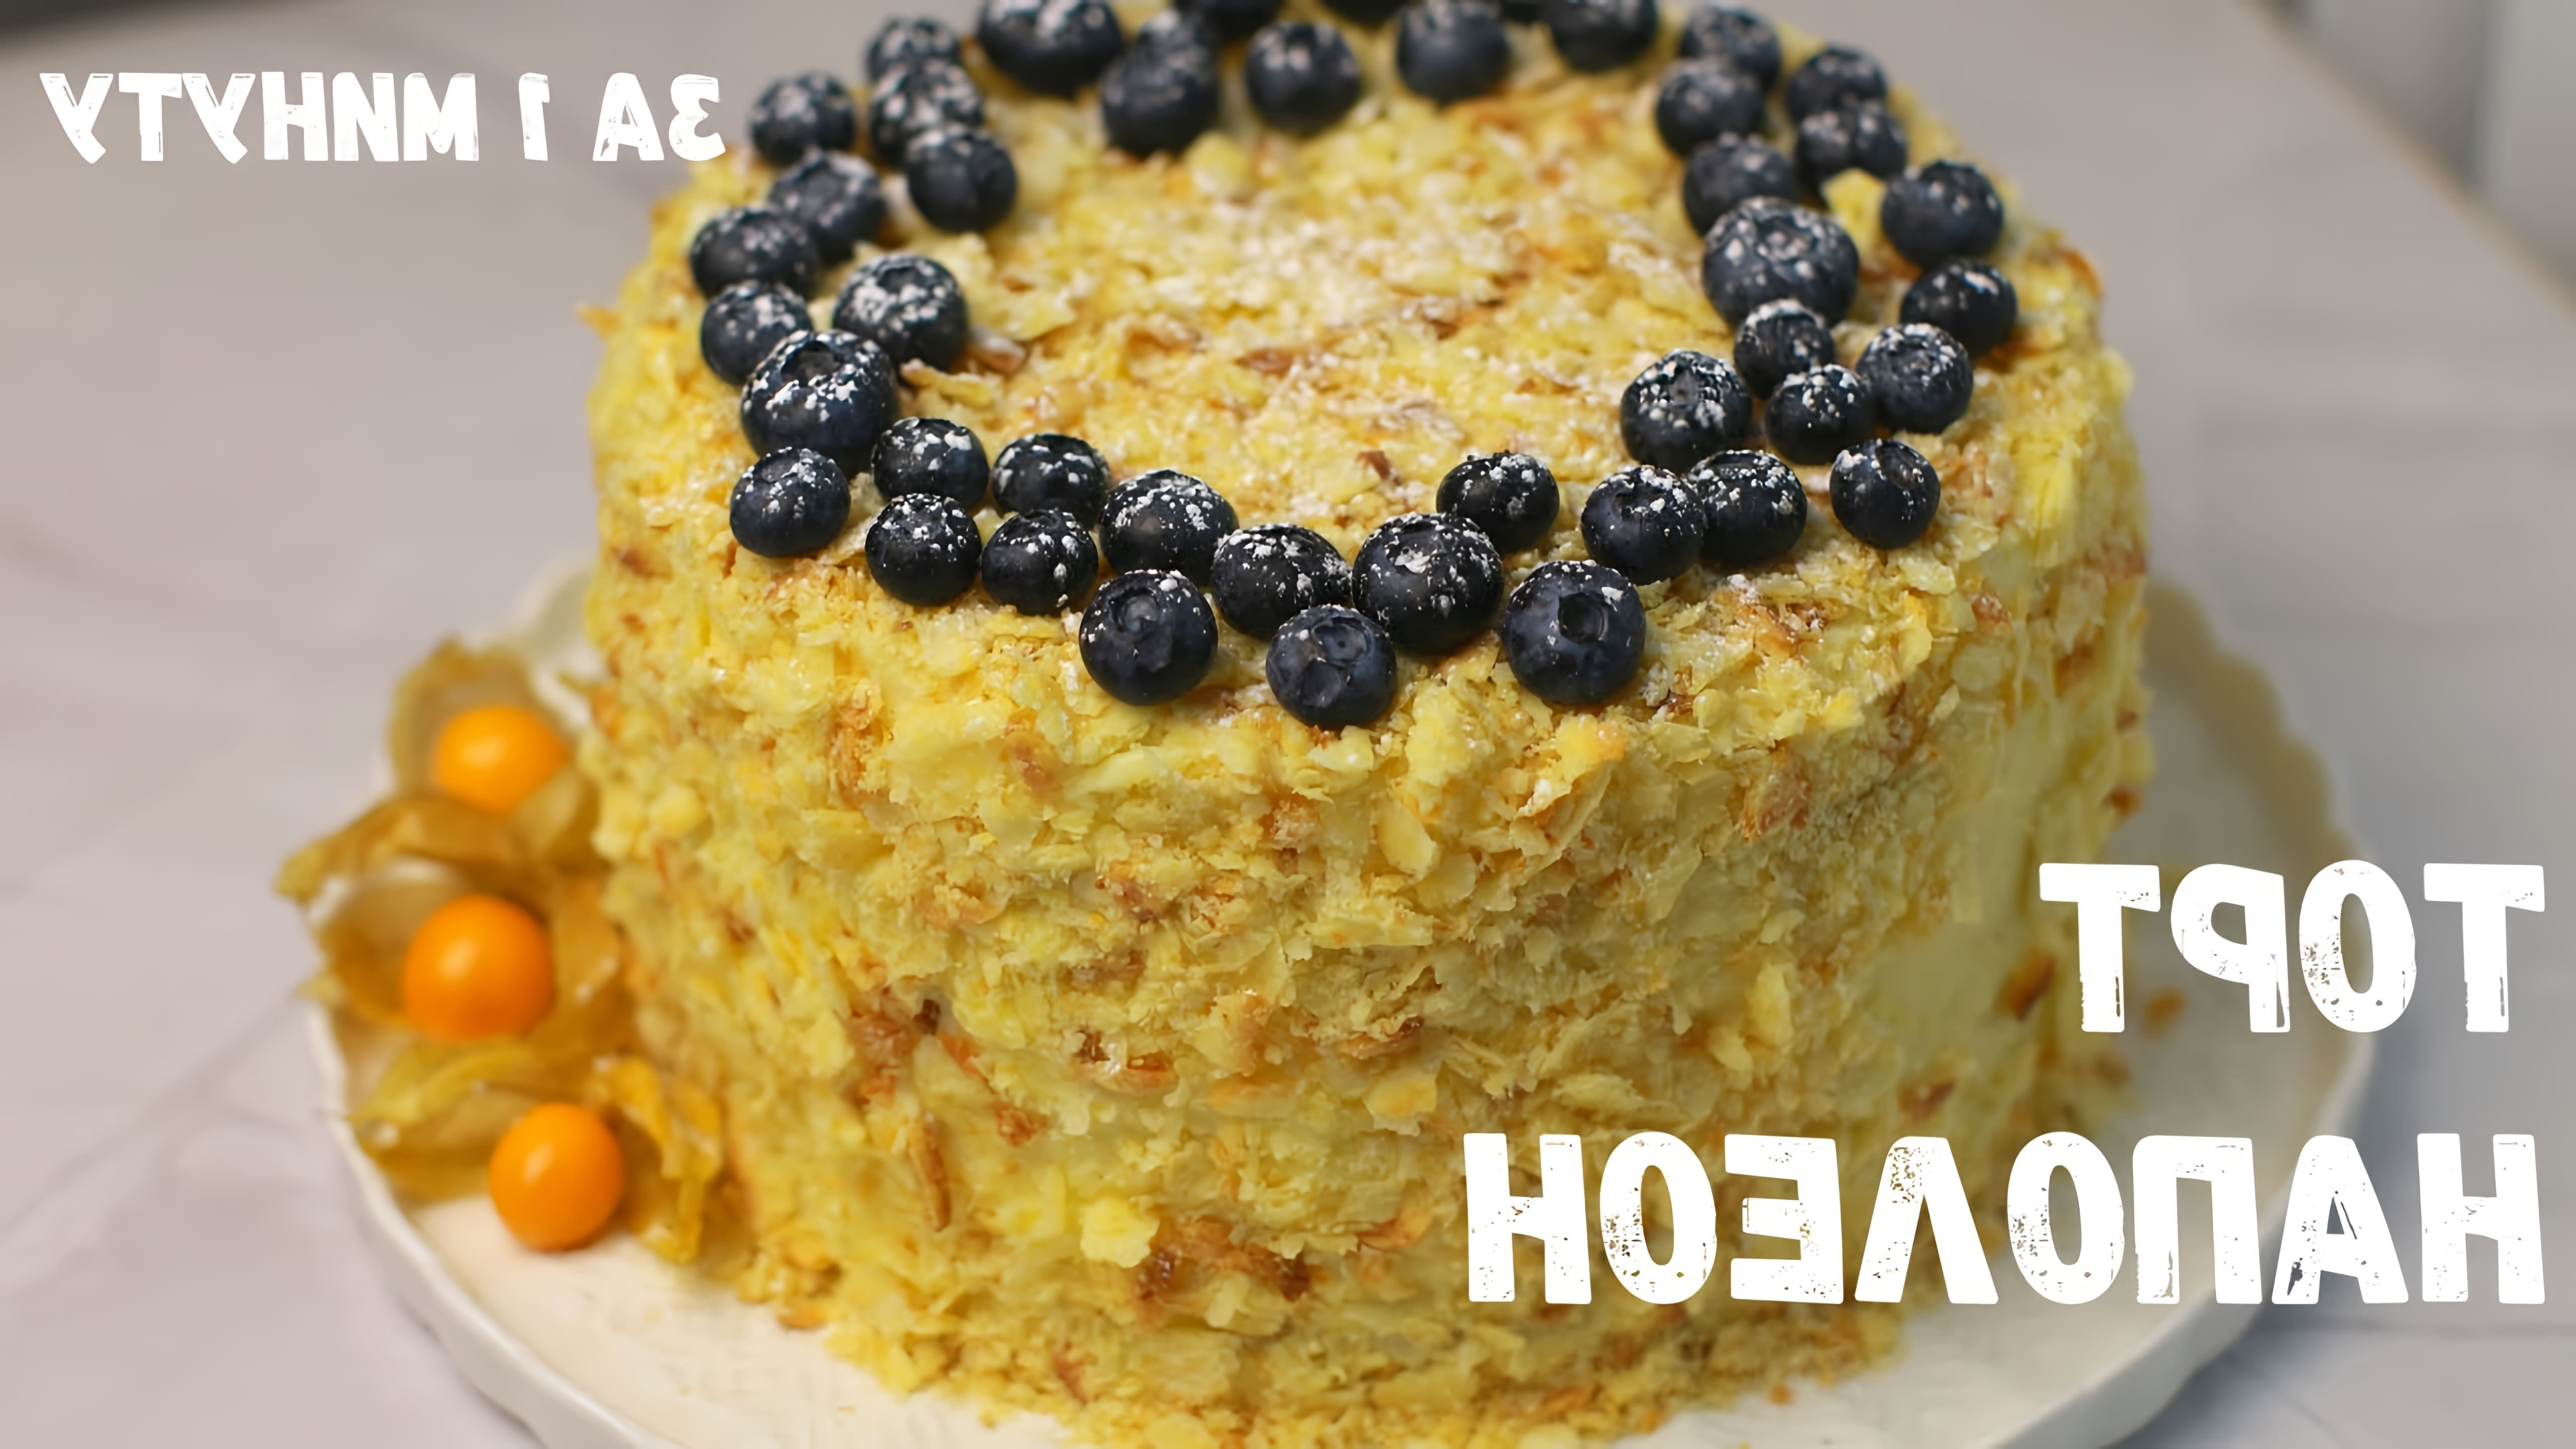 В этом видео показан простой рецепт приготовления торта Наполеон